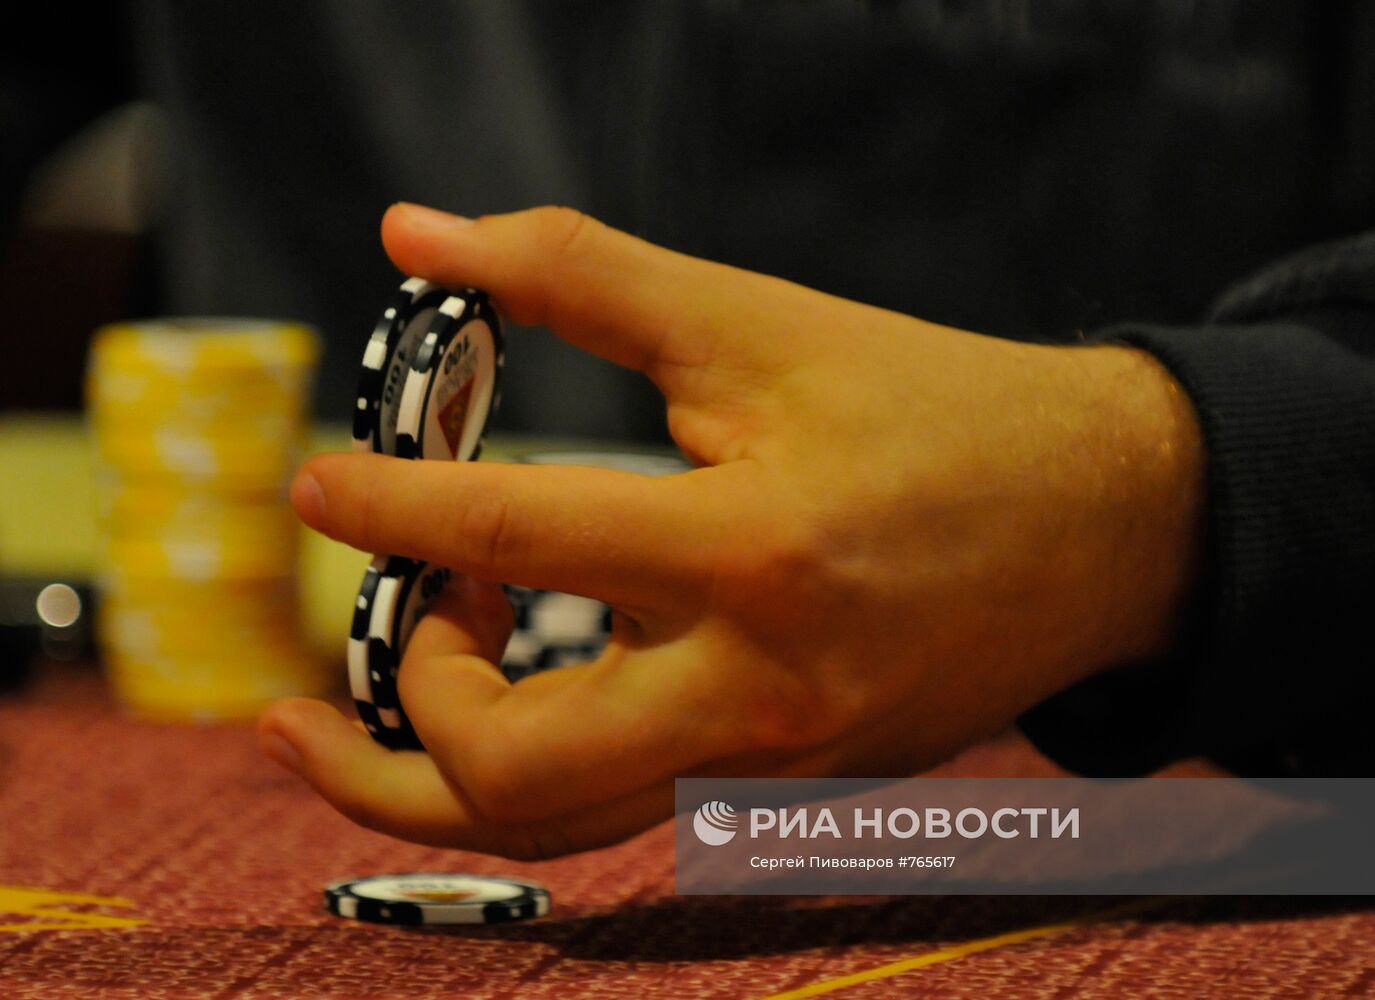 Всероссийский турнир по спортивному покеру